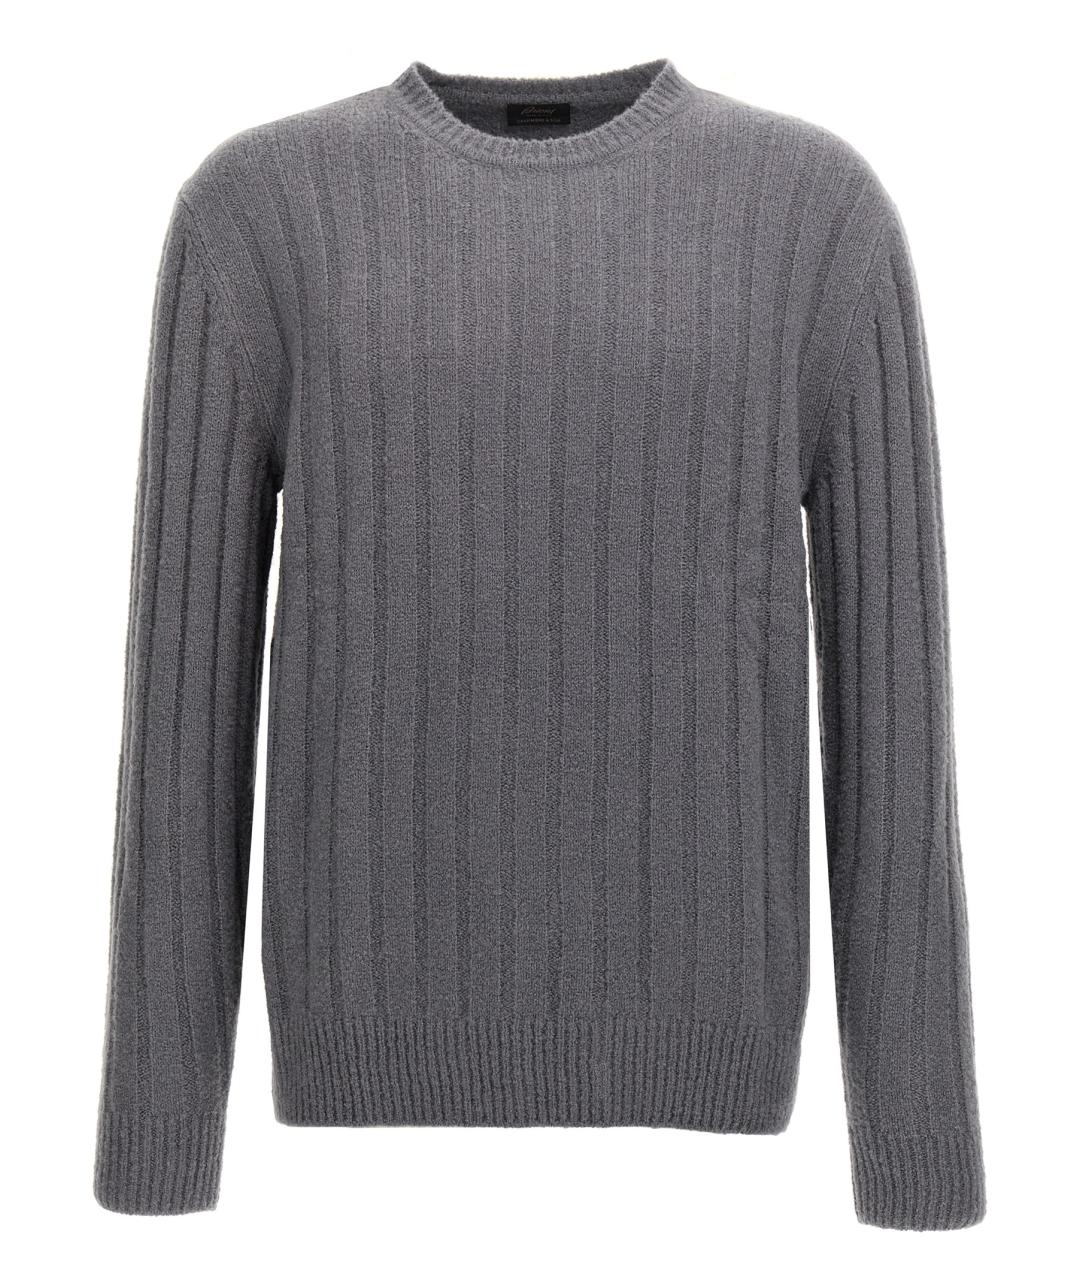 BRIONI Серый кашемировый джемпер / свитер, фото 1